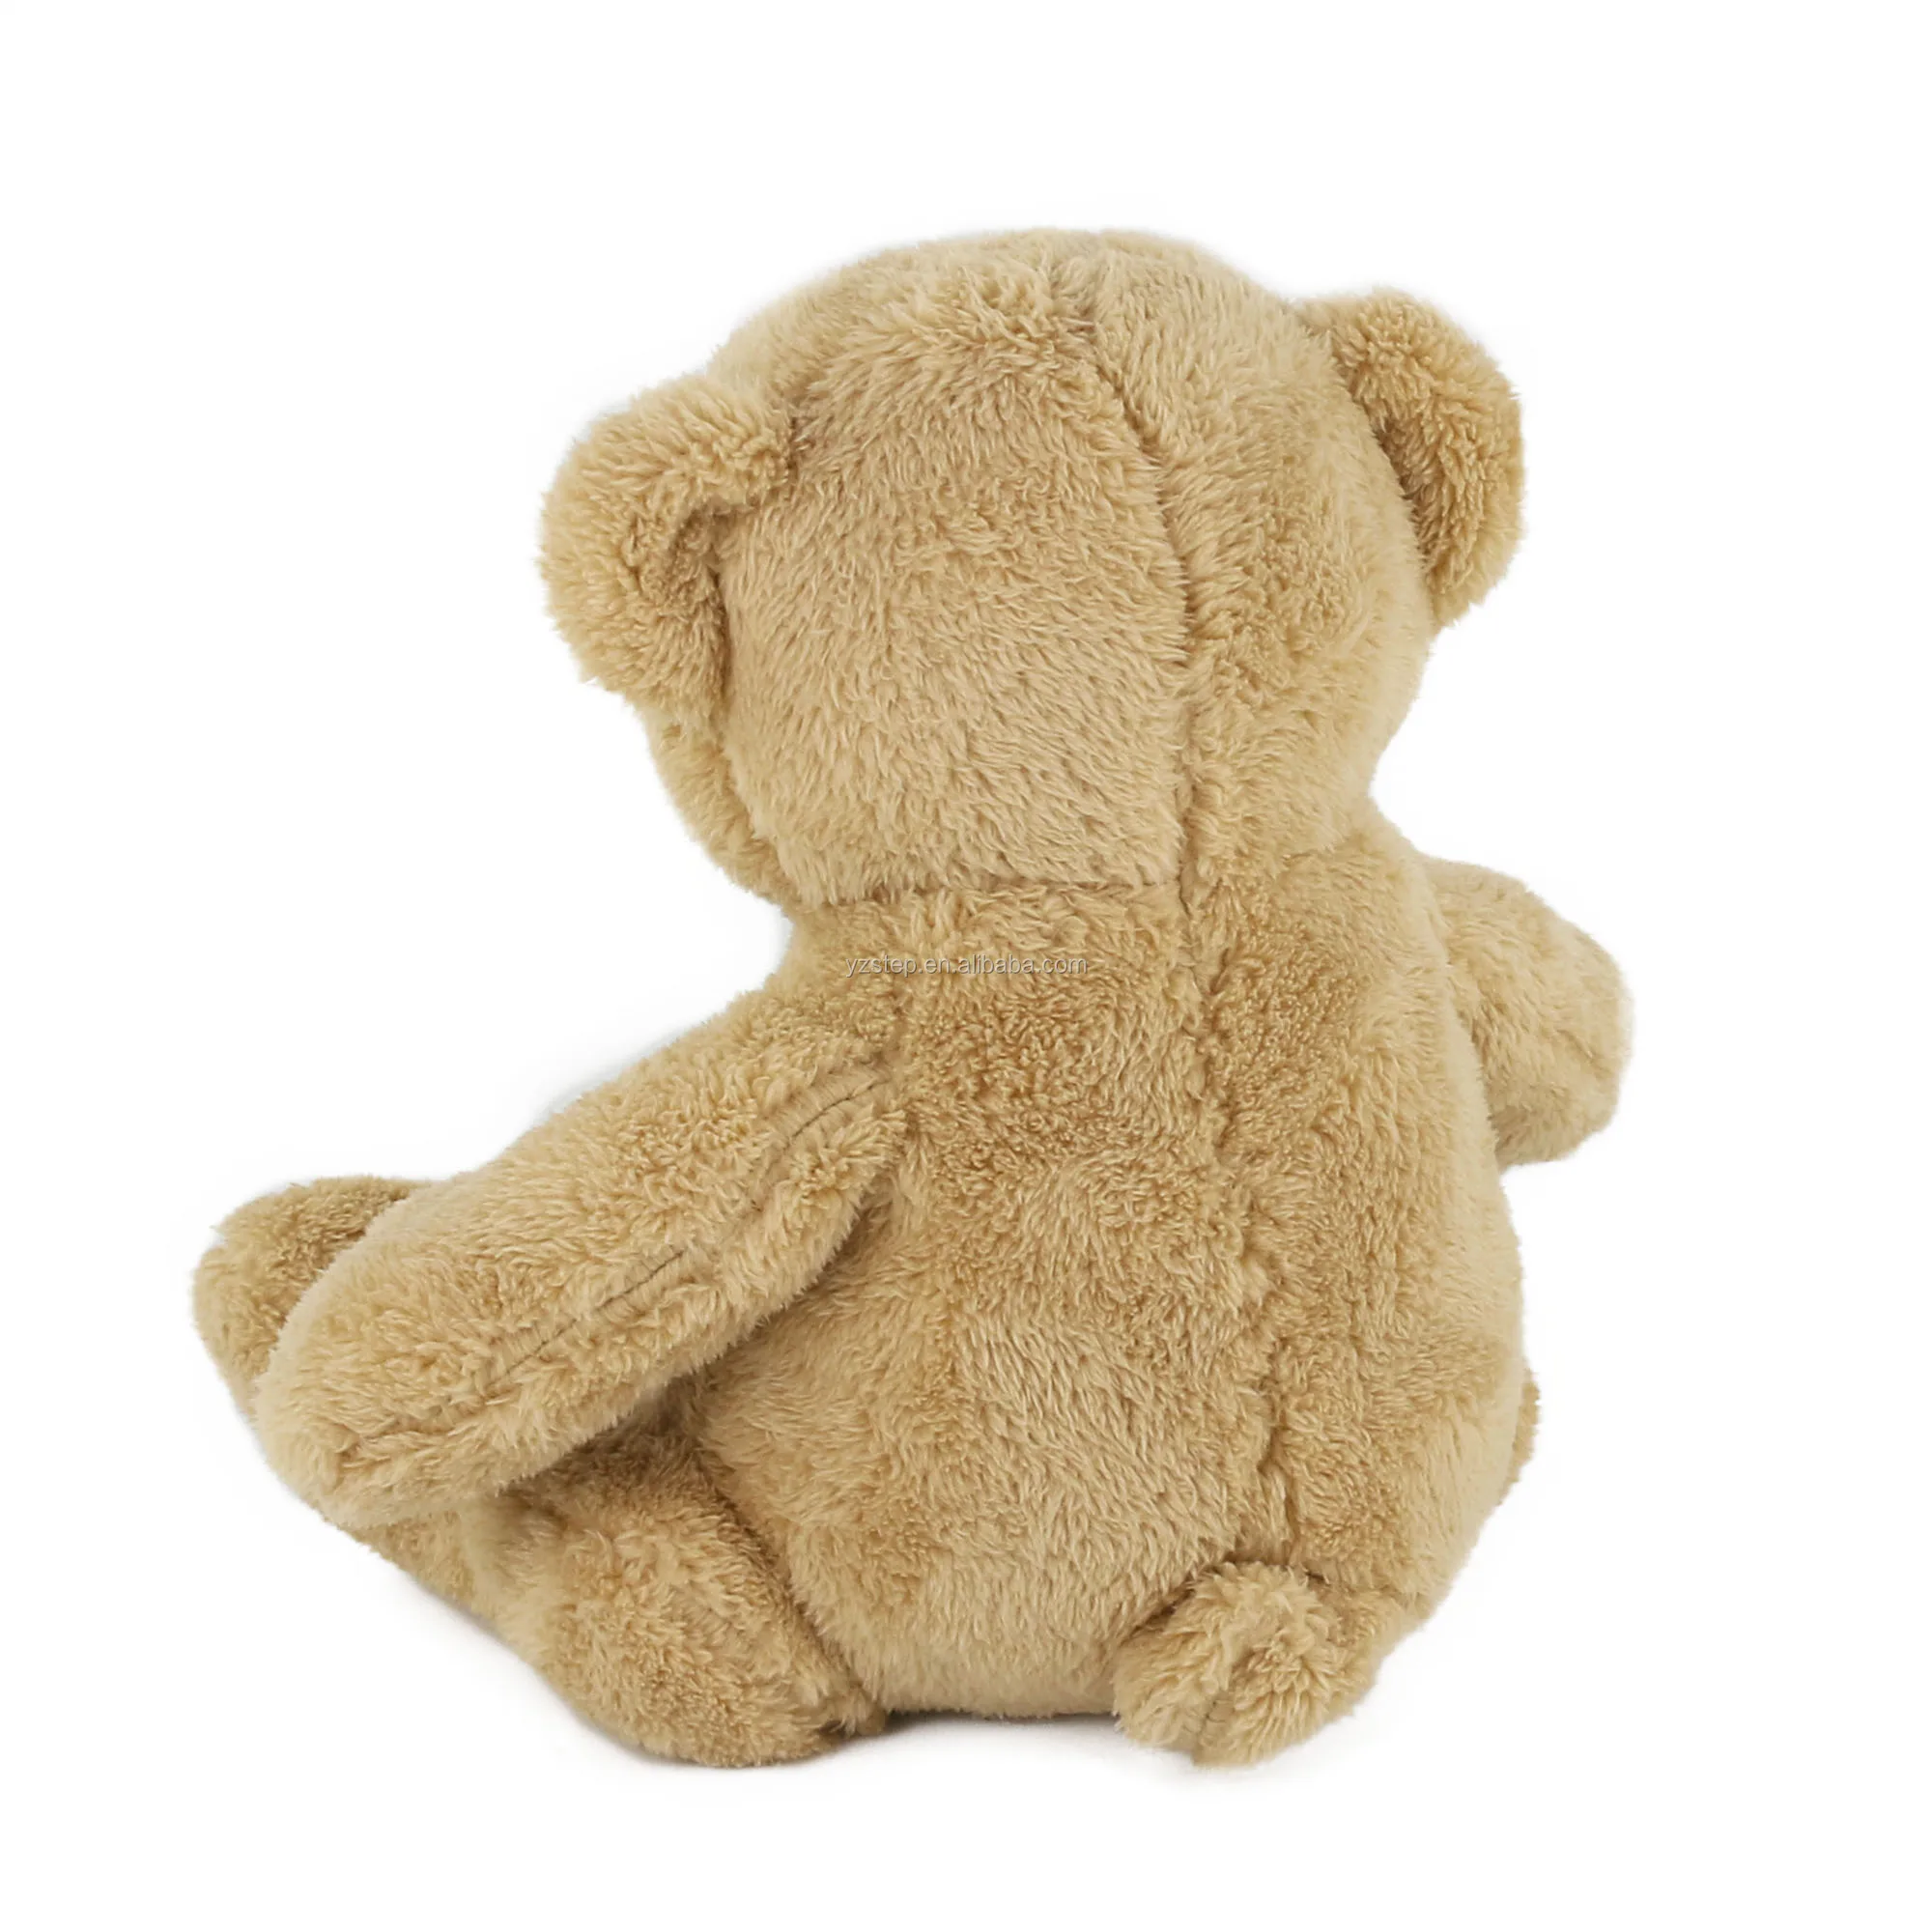 Customized Lovely Fat Cuddly Brown Teddy Bear - Buy Lovely Teddy Bear ...